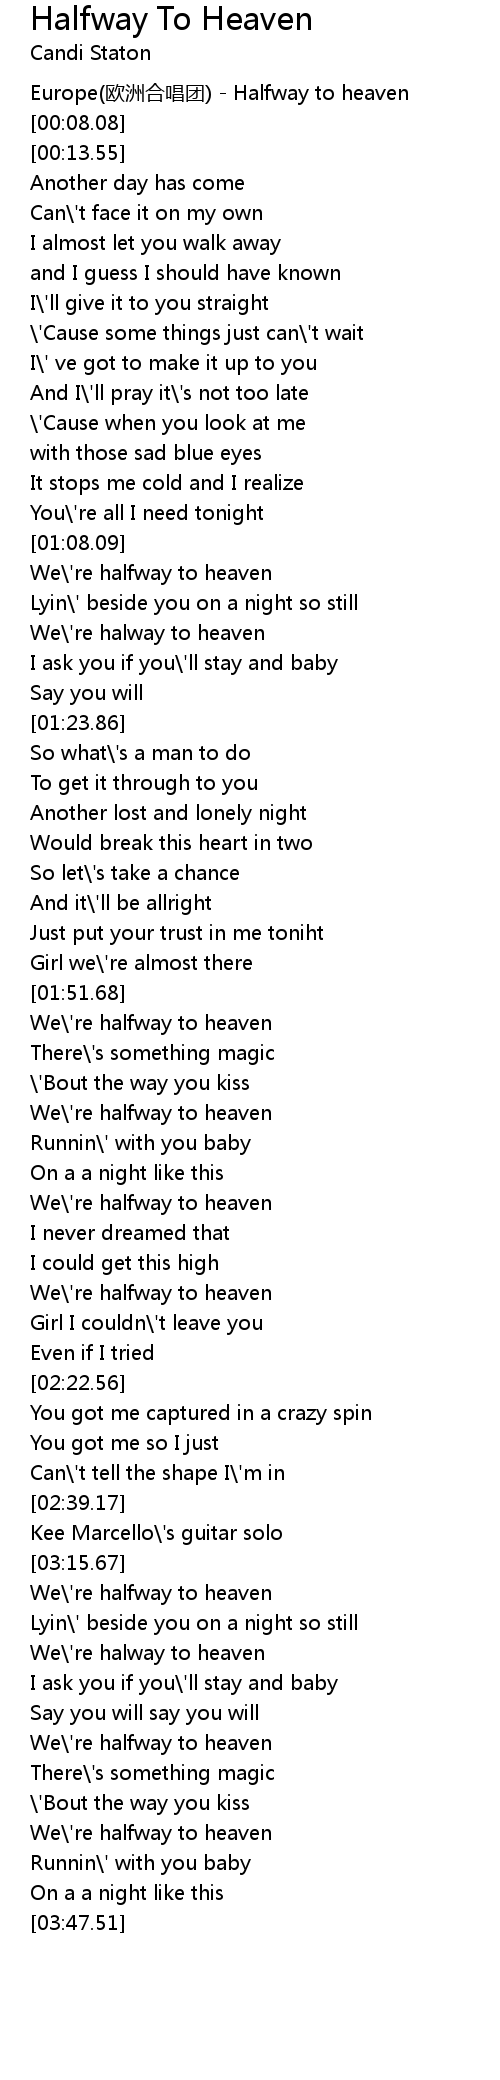 Halfway To Heaven Lyrics Follow Lyrics